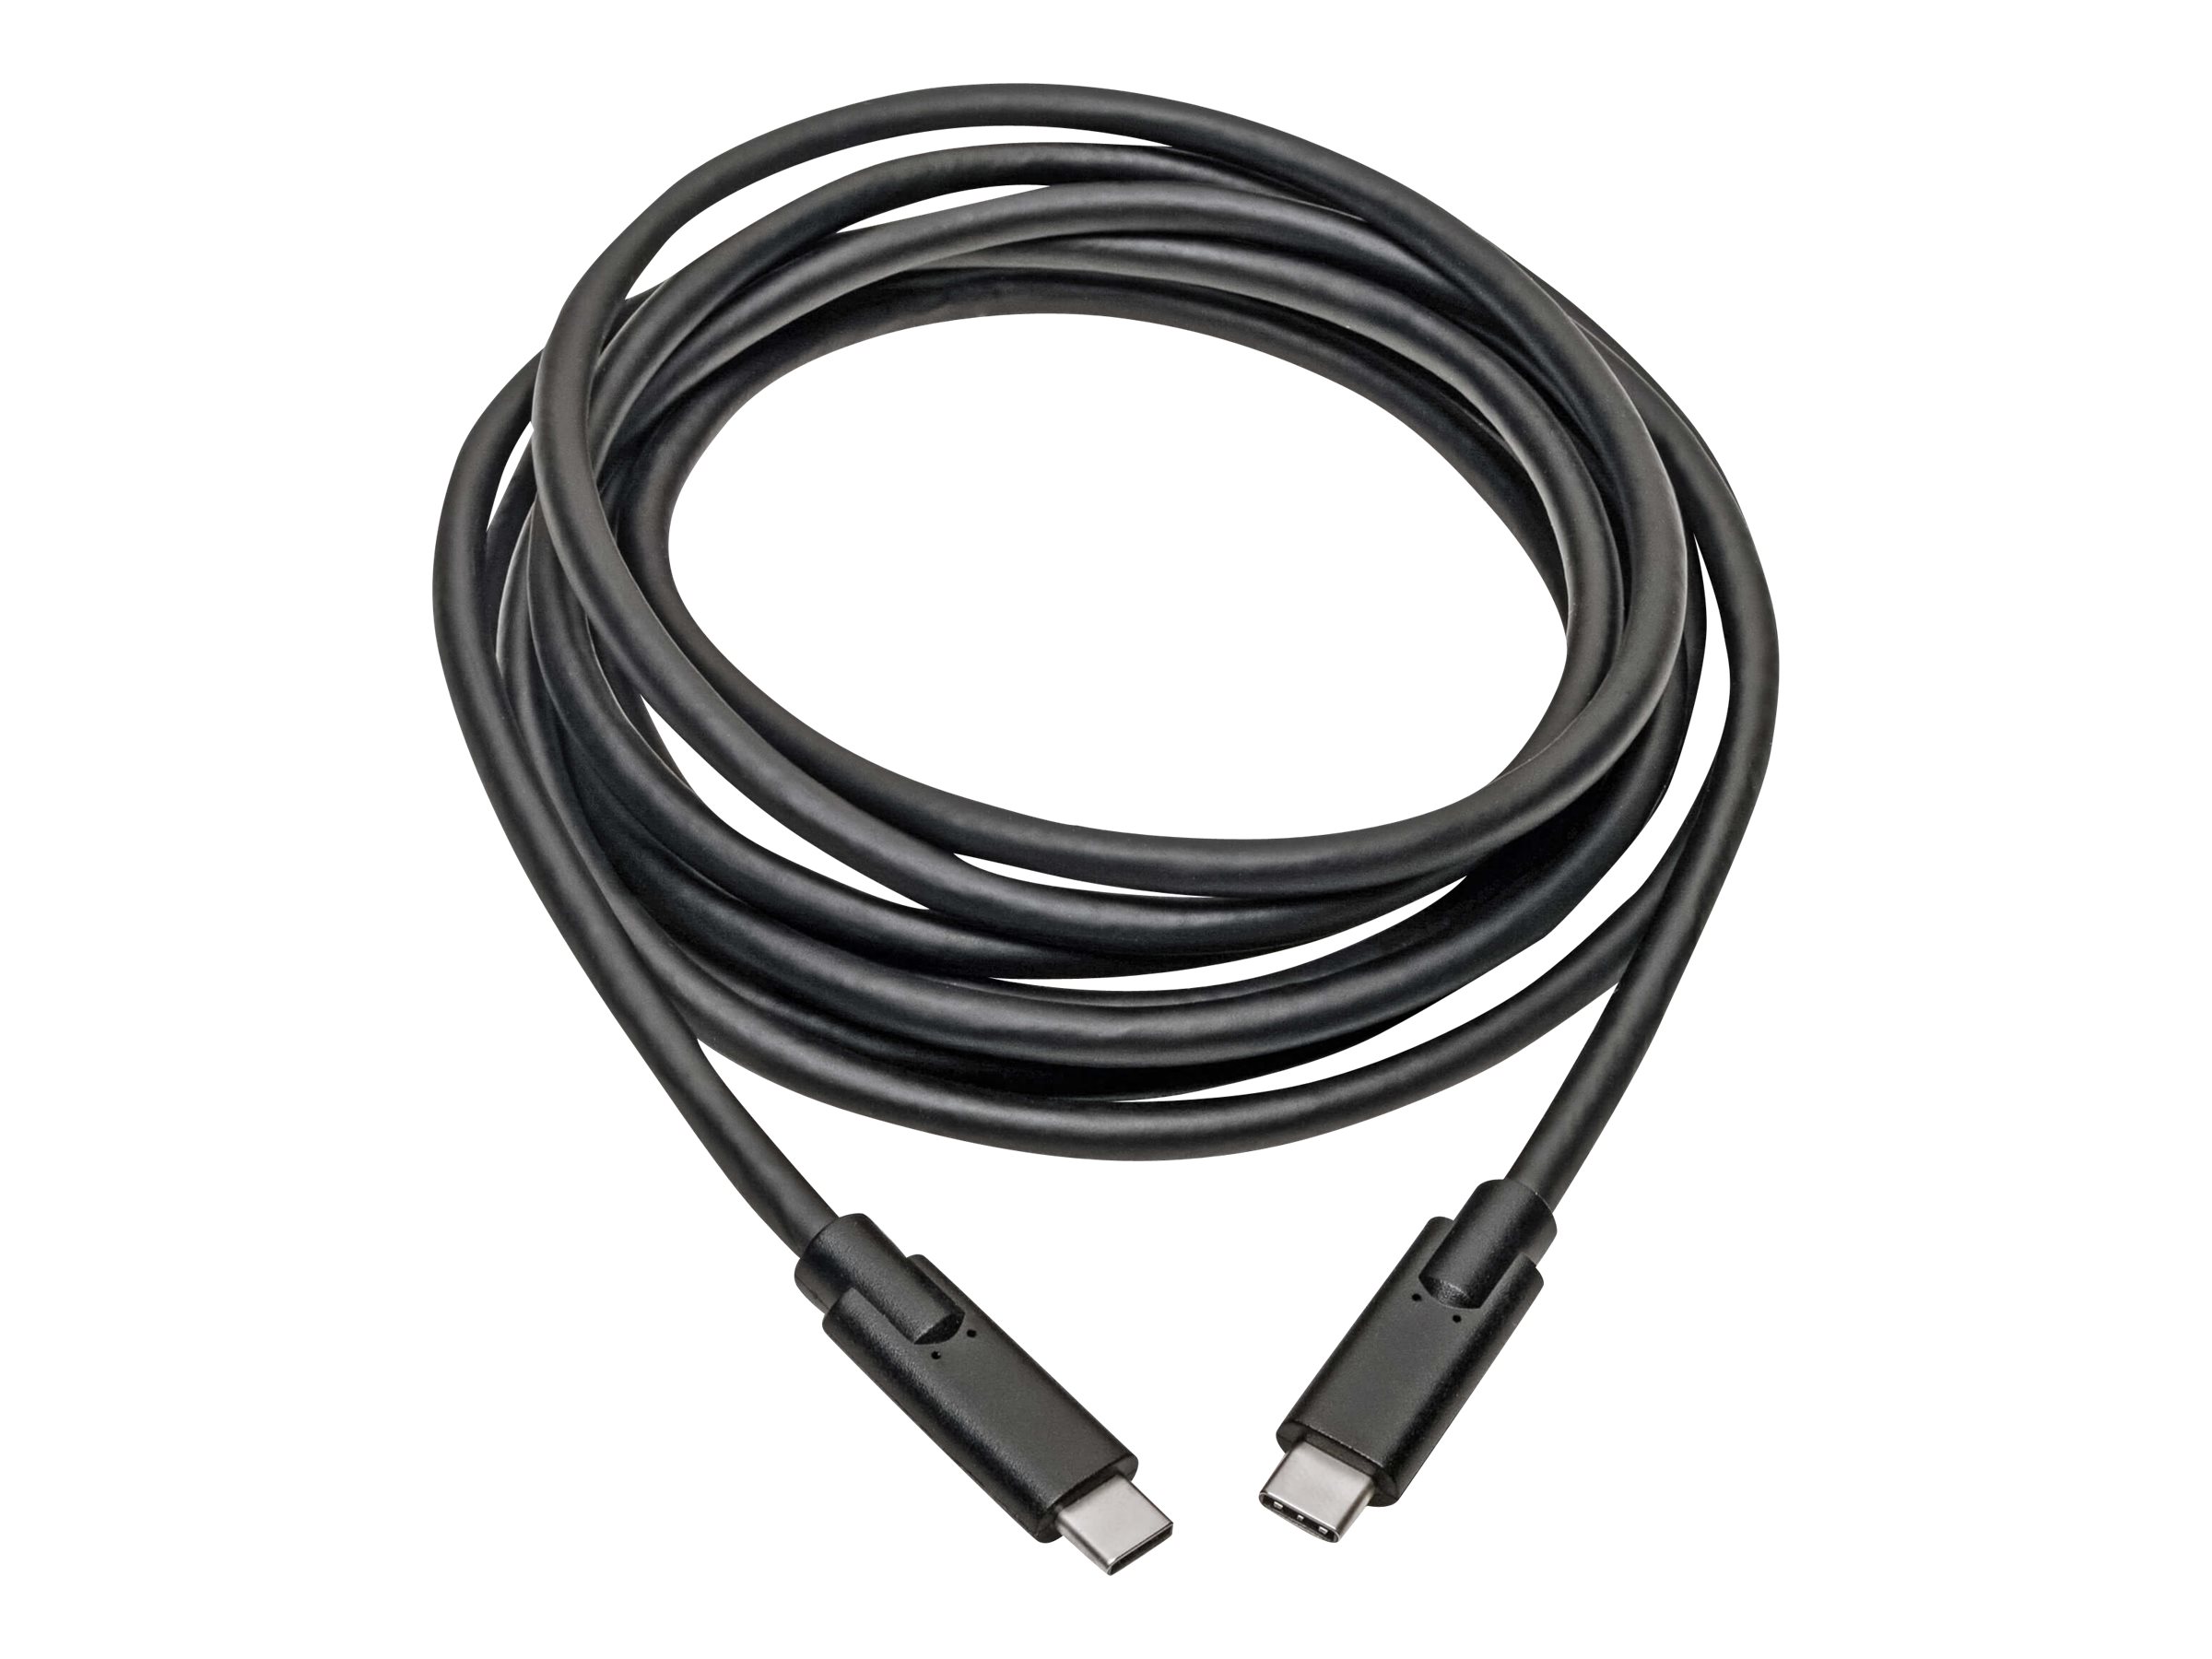 Eaton Tripp Lite Series USB-C Cable (M/M) - USB 3.2, Gen 1 (5 Gbps), Thunderbolt 3 Compatible, 10 ft. (3.05 m) - USB-Kabel - 24 